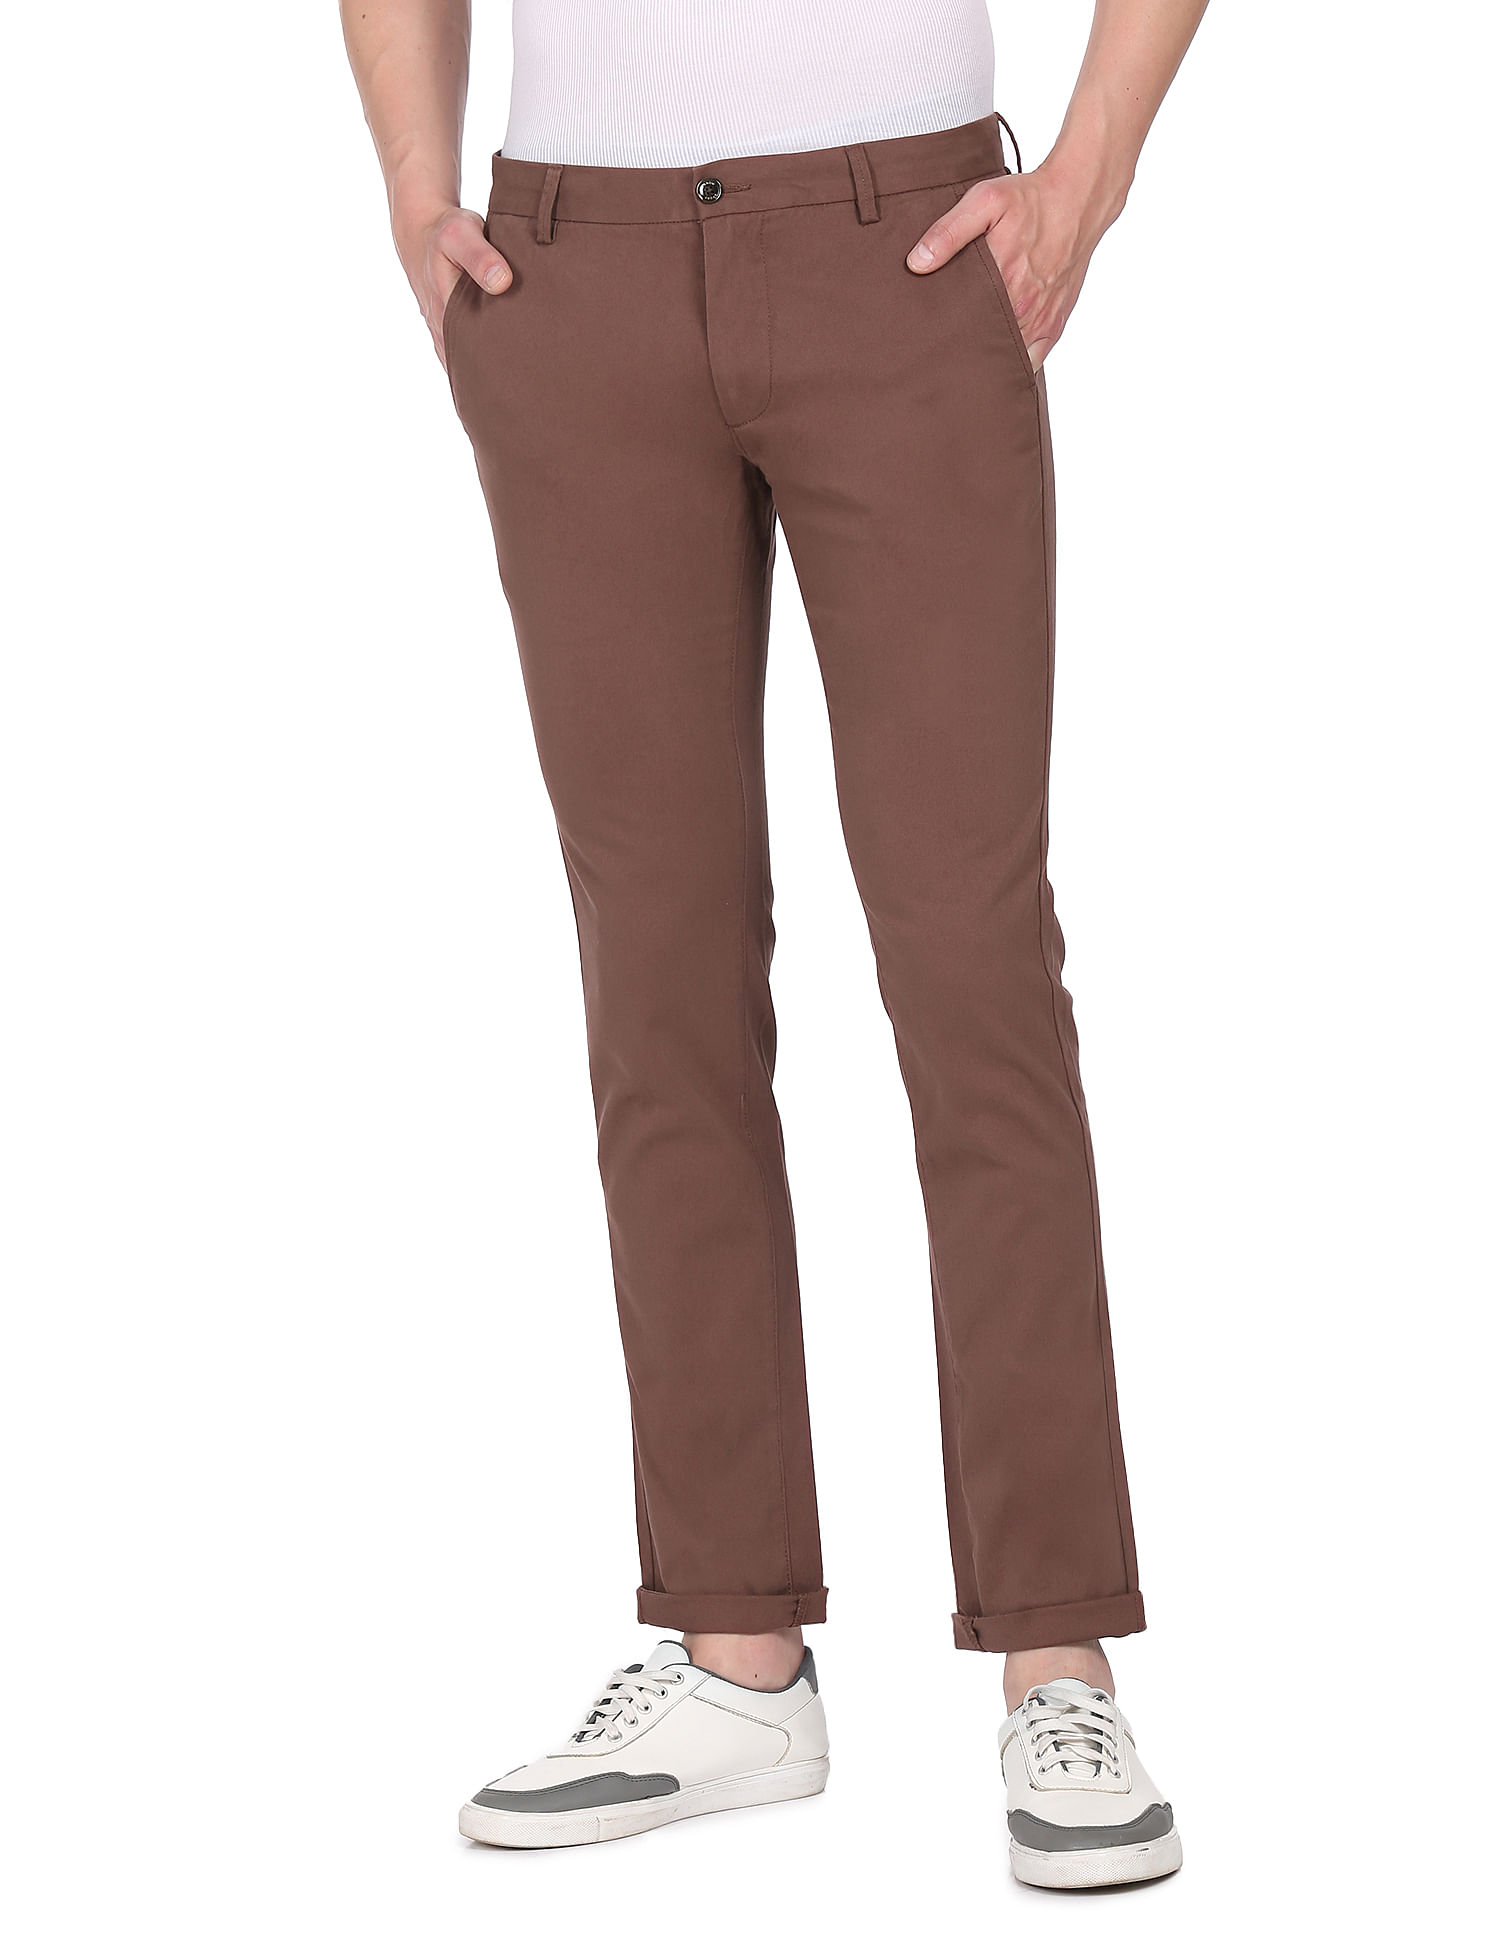 Buy JP 1880 Mens Sweatpants Long Sports Trousers Online at desertcartINDIA